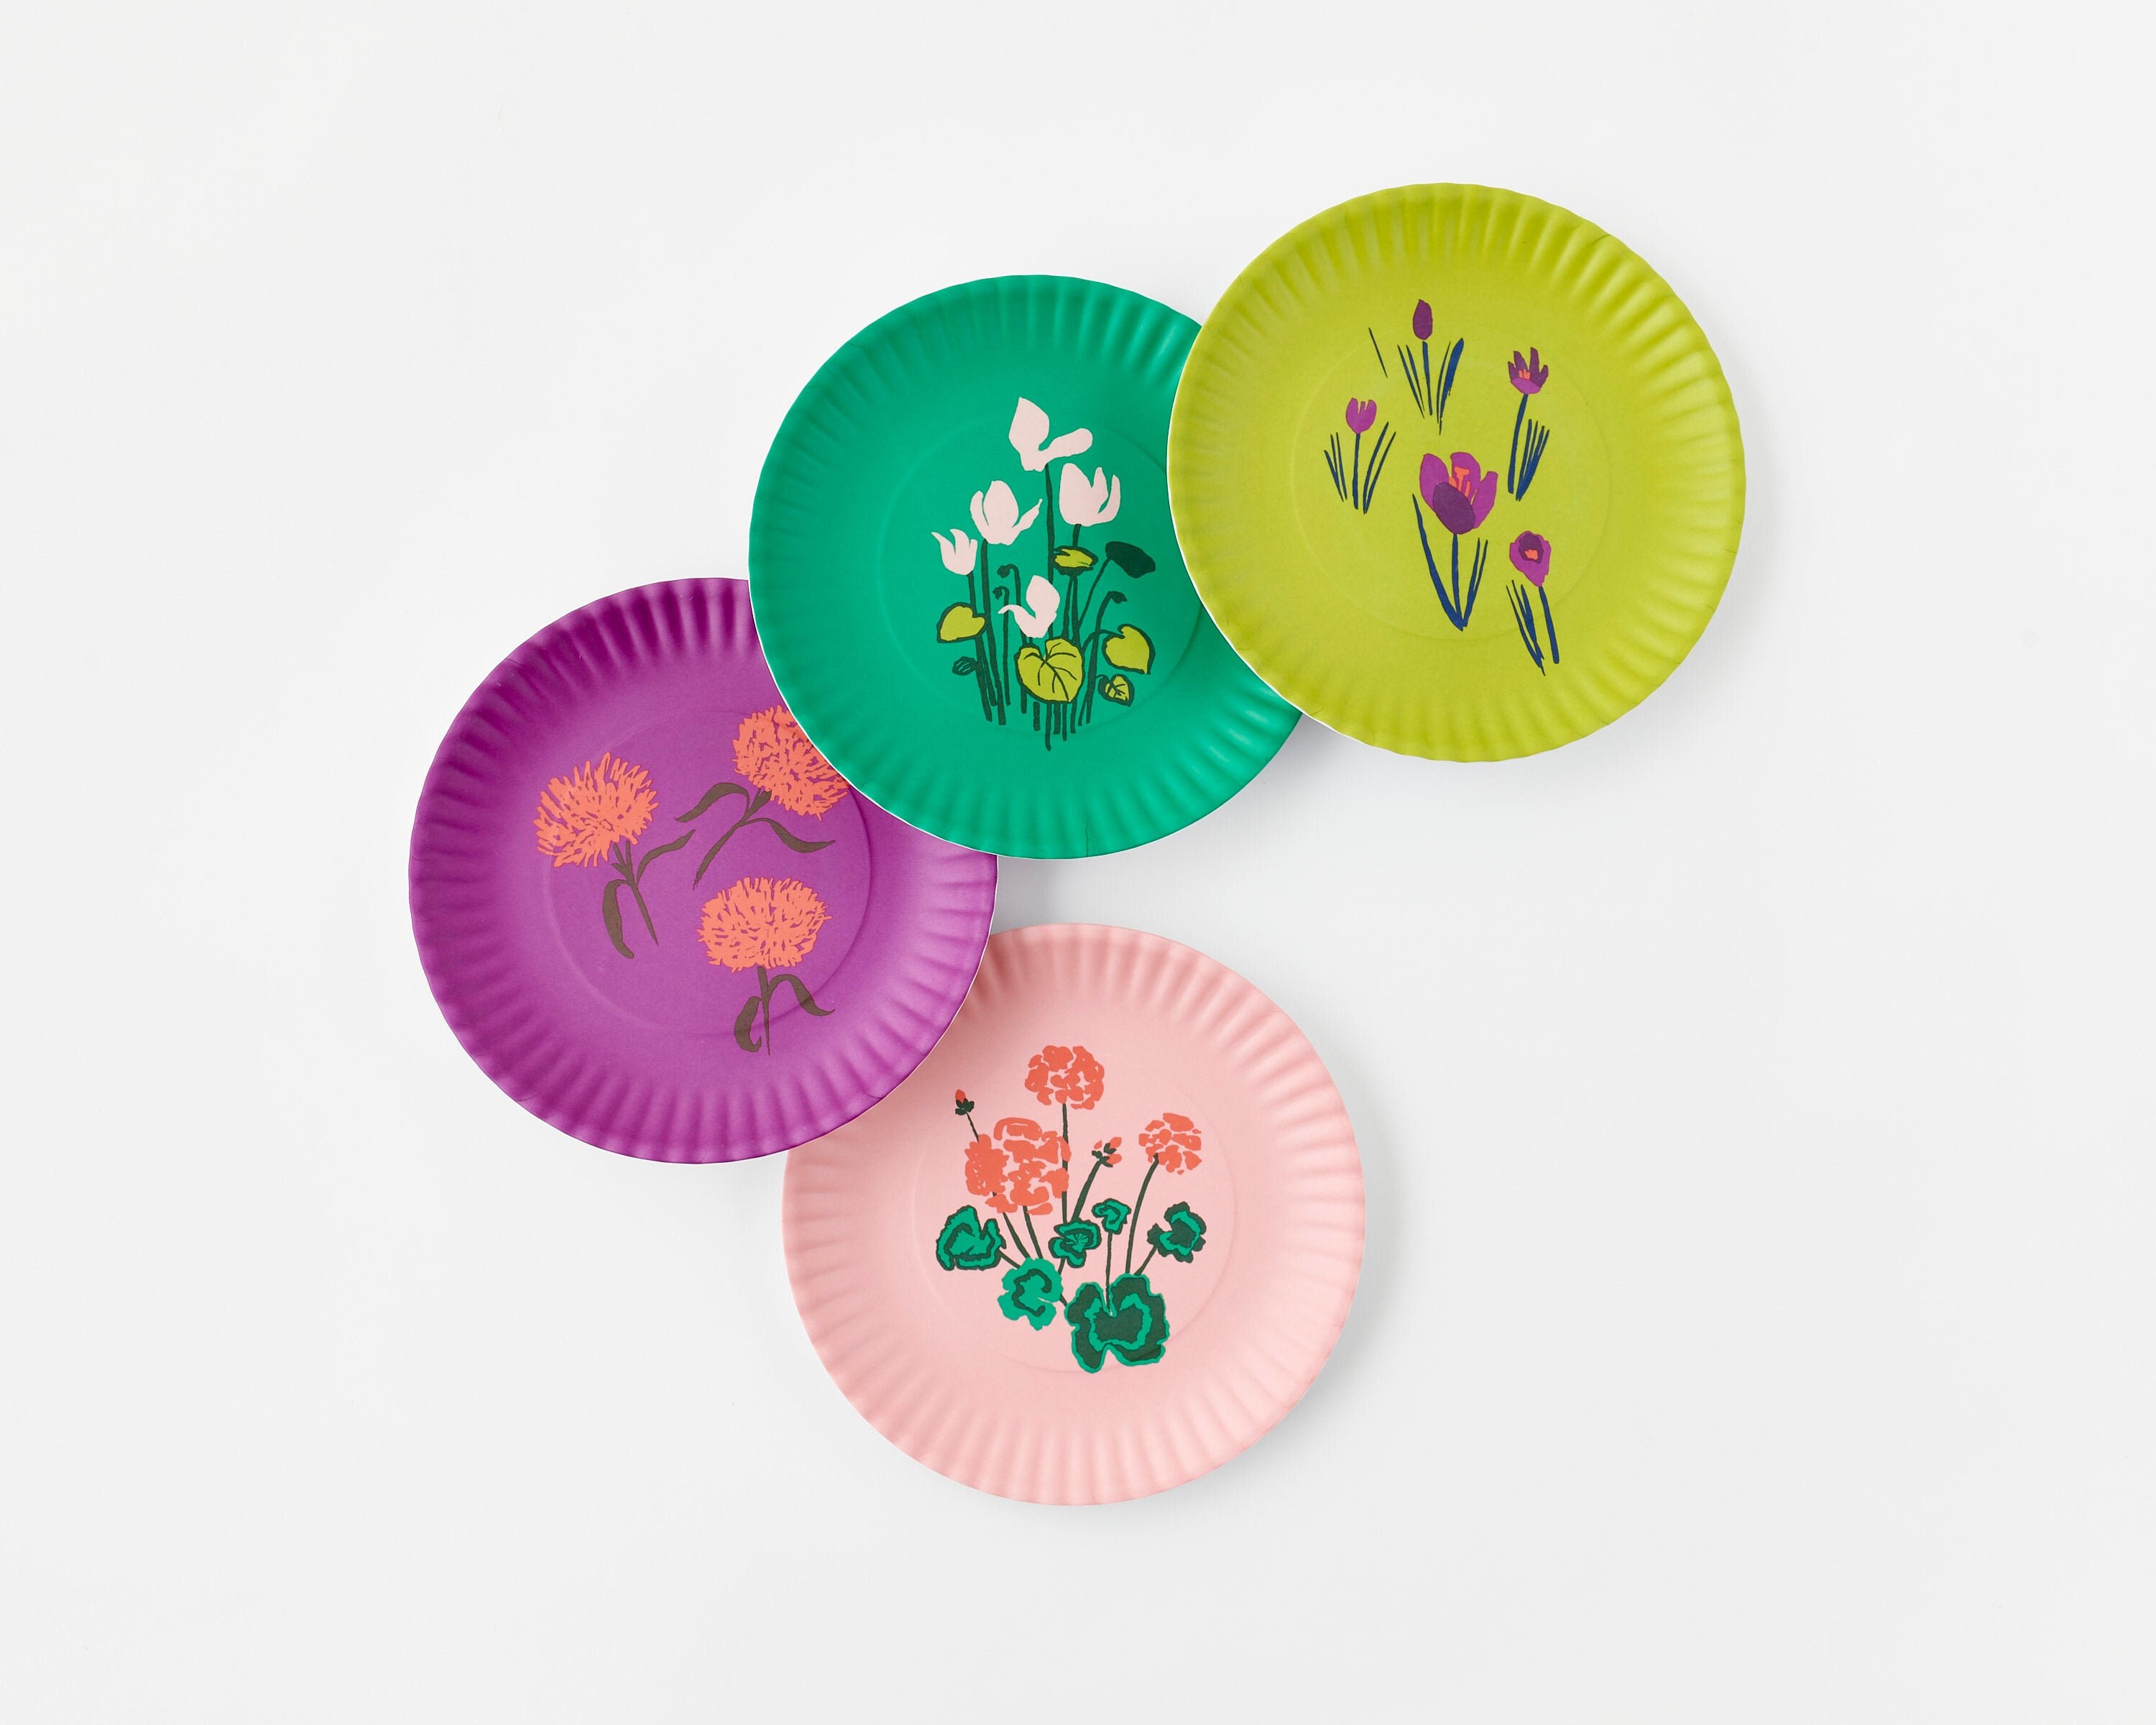 Les Fleurs, Floral Melamine Plate Sets de Misha Zadeh, avec Des Illustrations Au Pinceau Géraniums, 